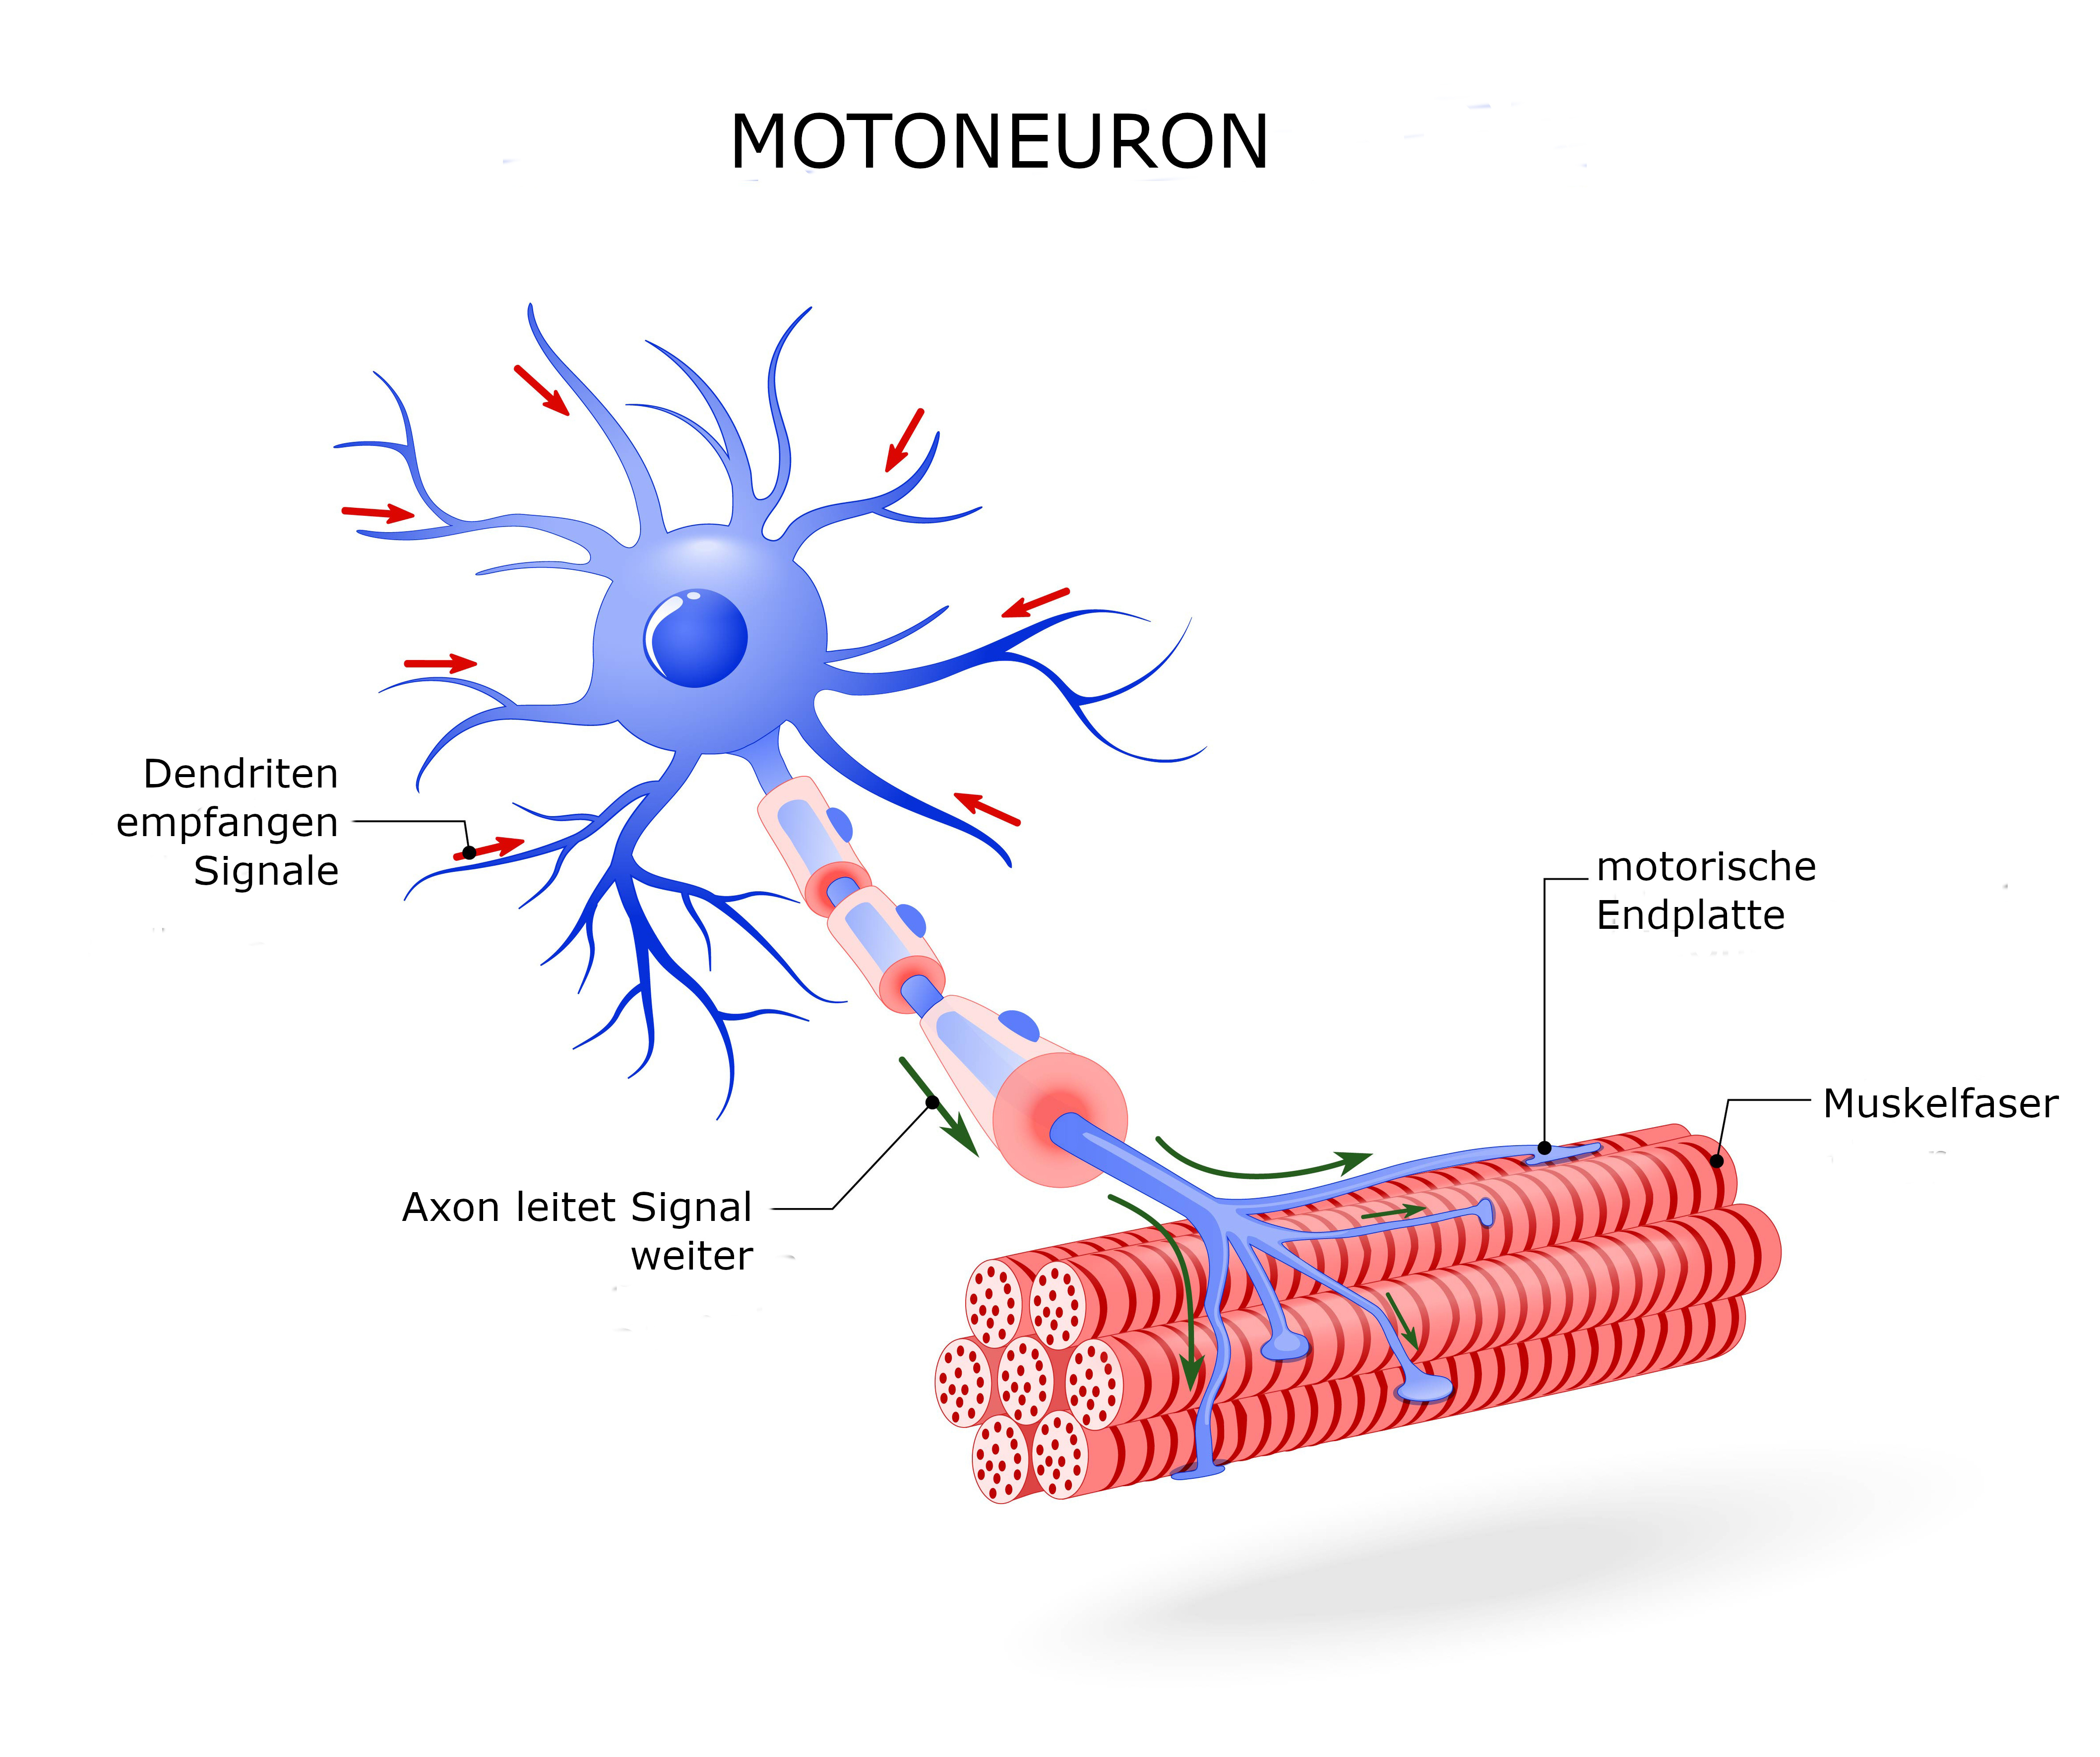 Motoneuron